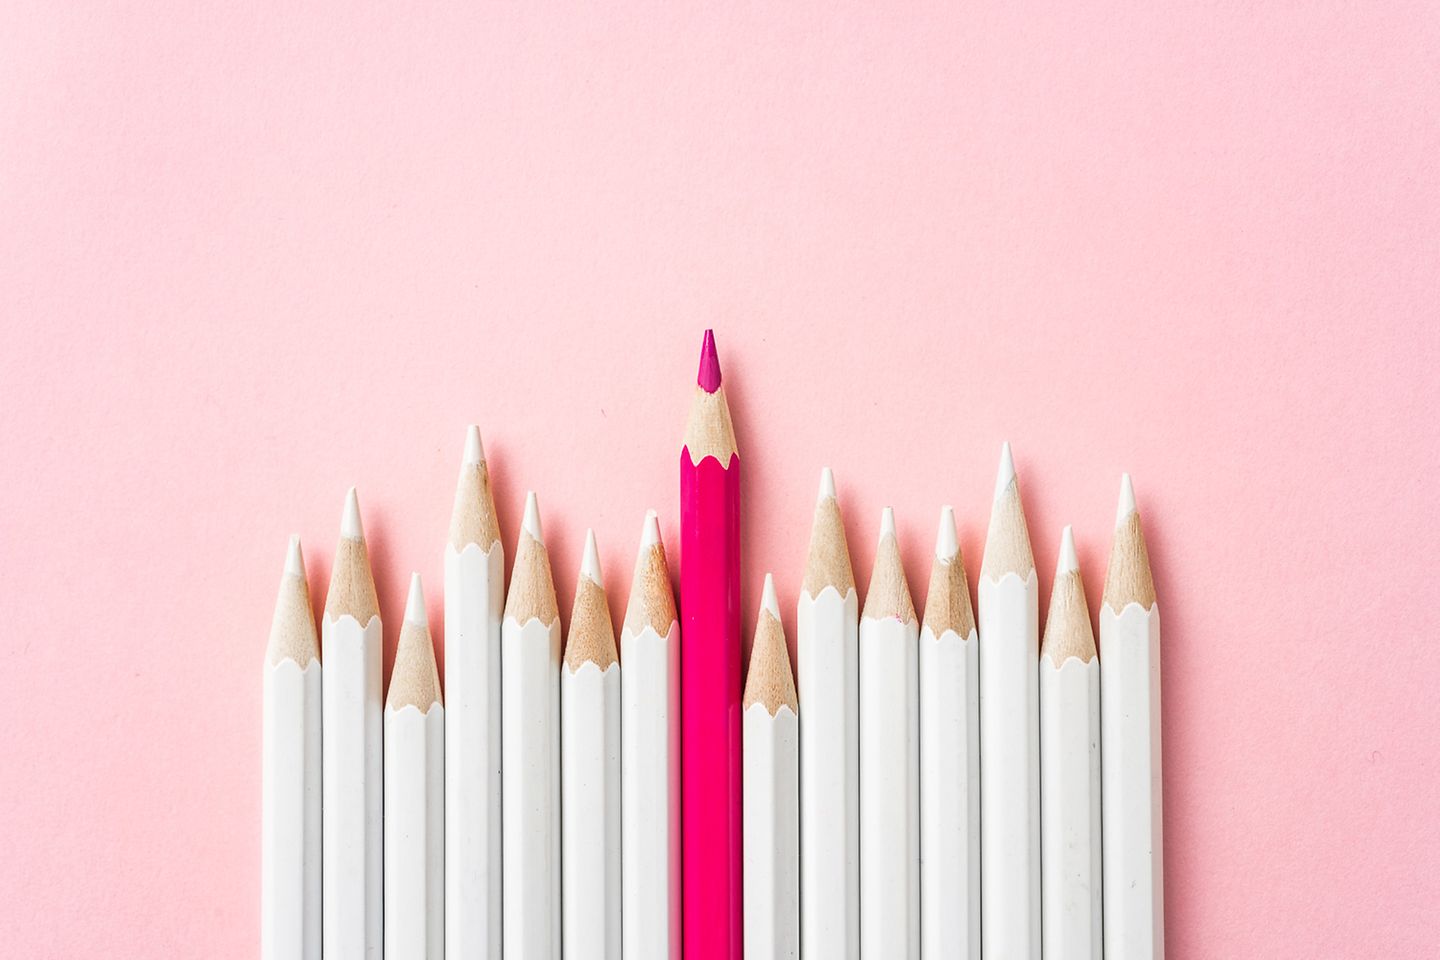 Fila de lápices de color blanco con lápiz de color fucsia en el medio sobre fondo rosa claro